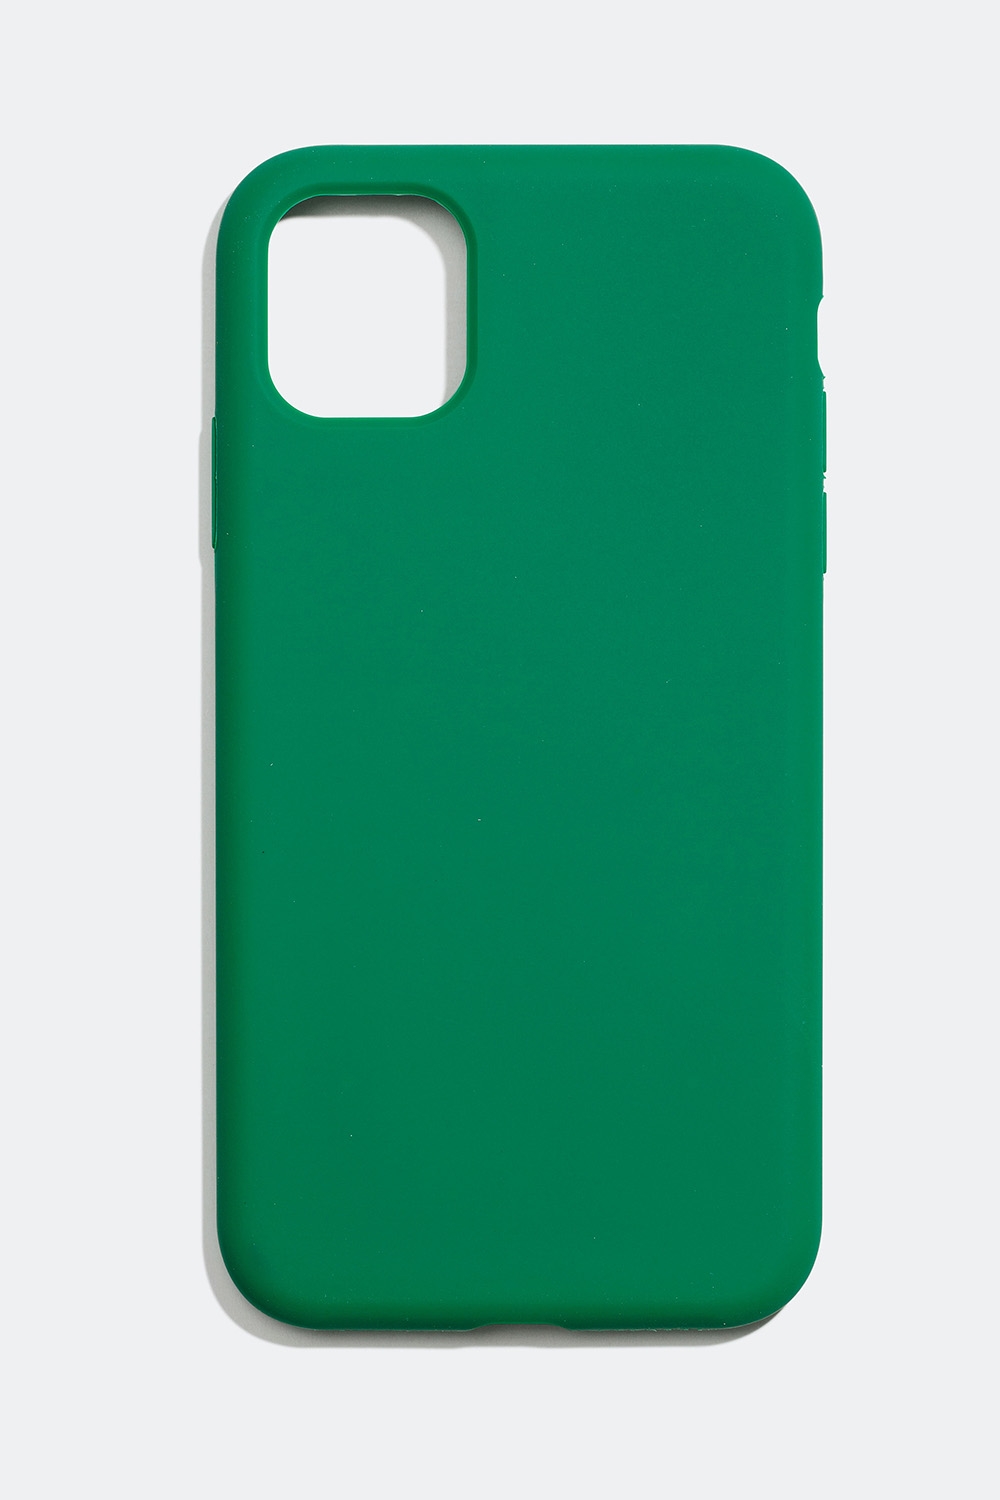 Telefoncover i mat grøn – iPhone 11/XR i gruppen Tilbehør / Mobiltilbehør / Mobilcovers / iPhone 11 / XR hos Glitter (174000357711)